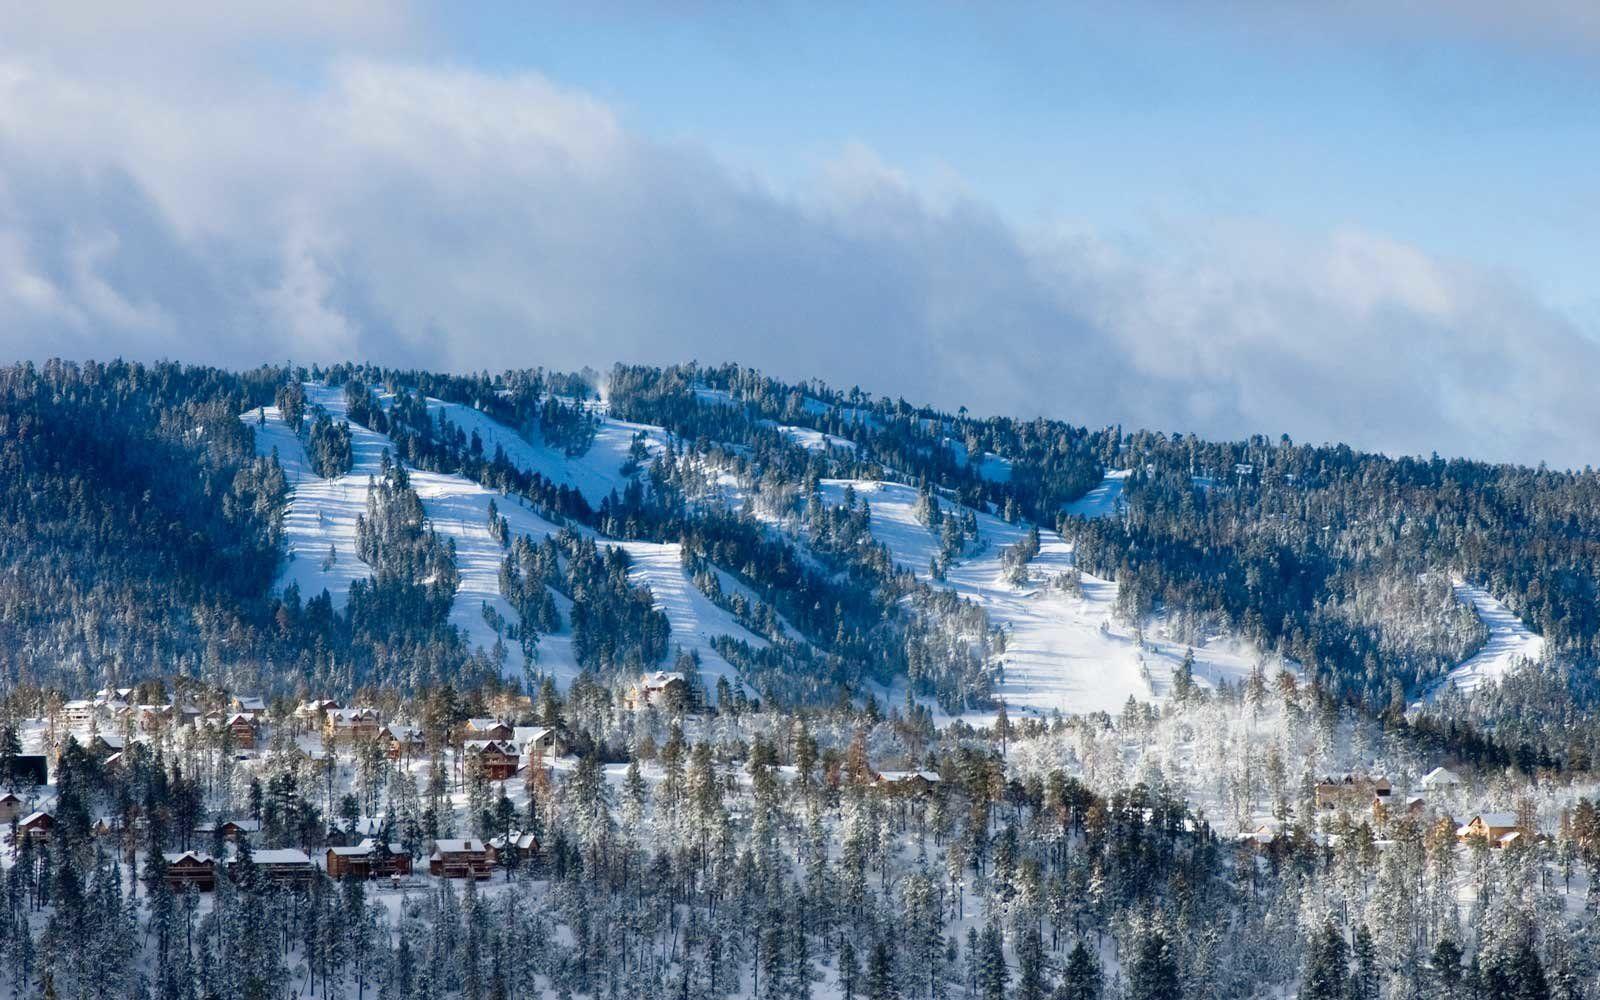 Snow Summit Ski Logo - Big Bear California — Cabins, Camping, and Skiing Tips | Travel + ...